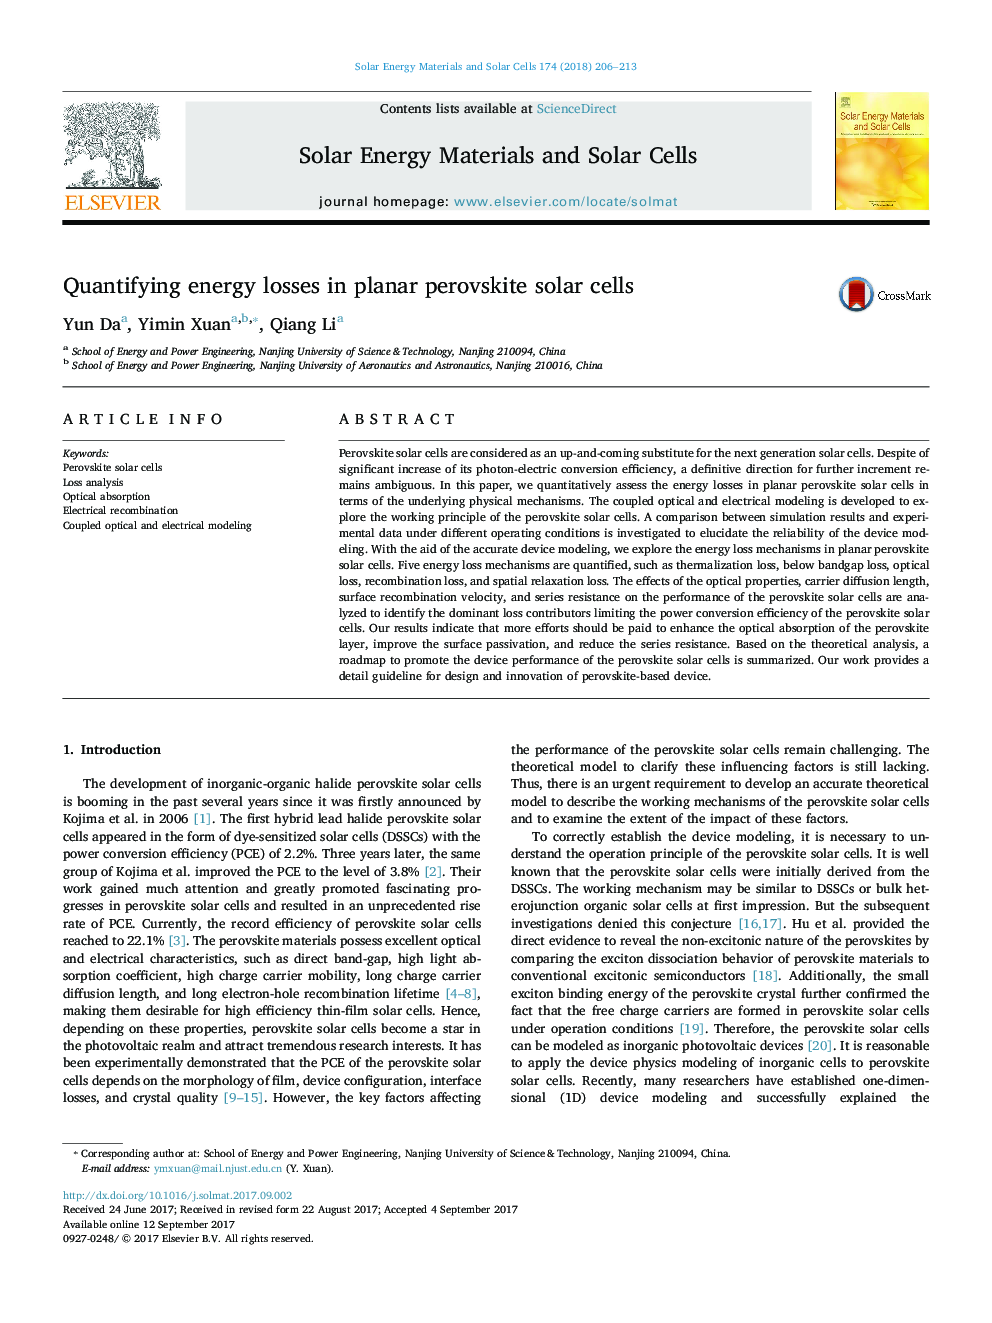 کمیت تلفات انرژی در مسطح پروسکایت سلول های خورشیدی